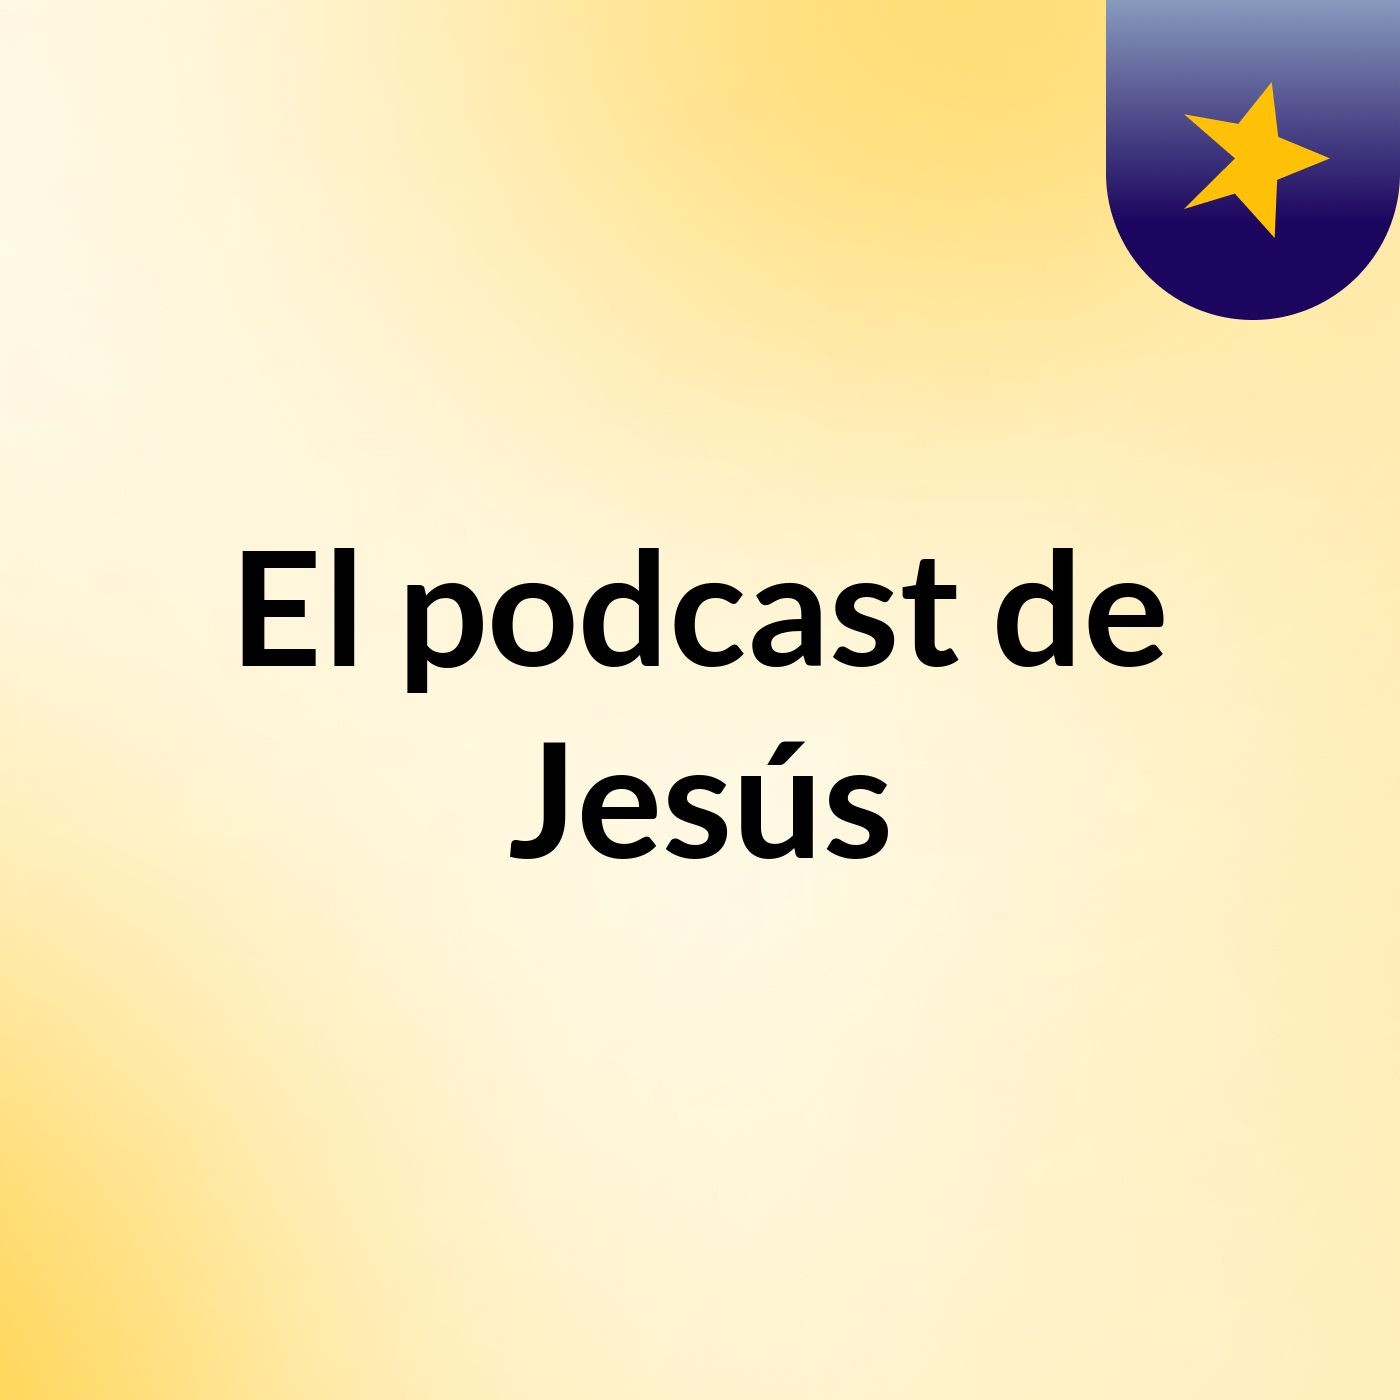 Episodio 8 - El podcast de Jesús